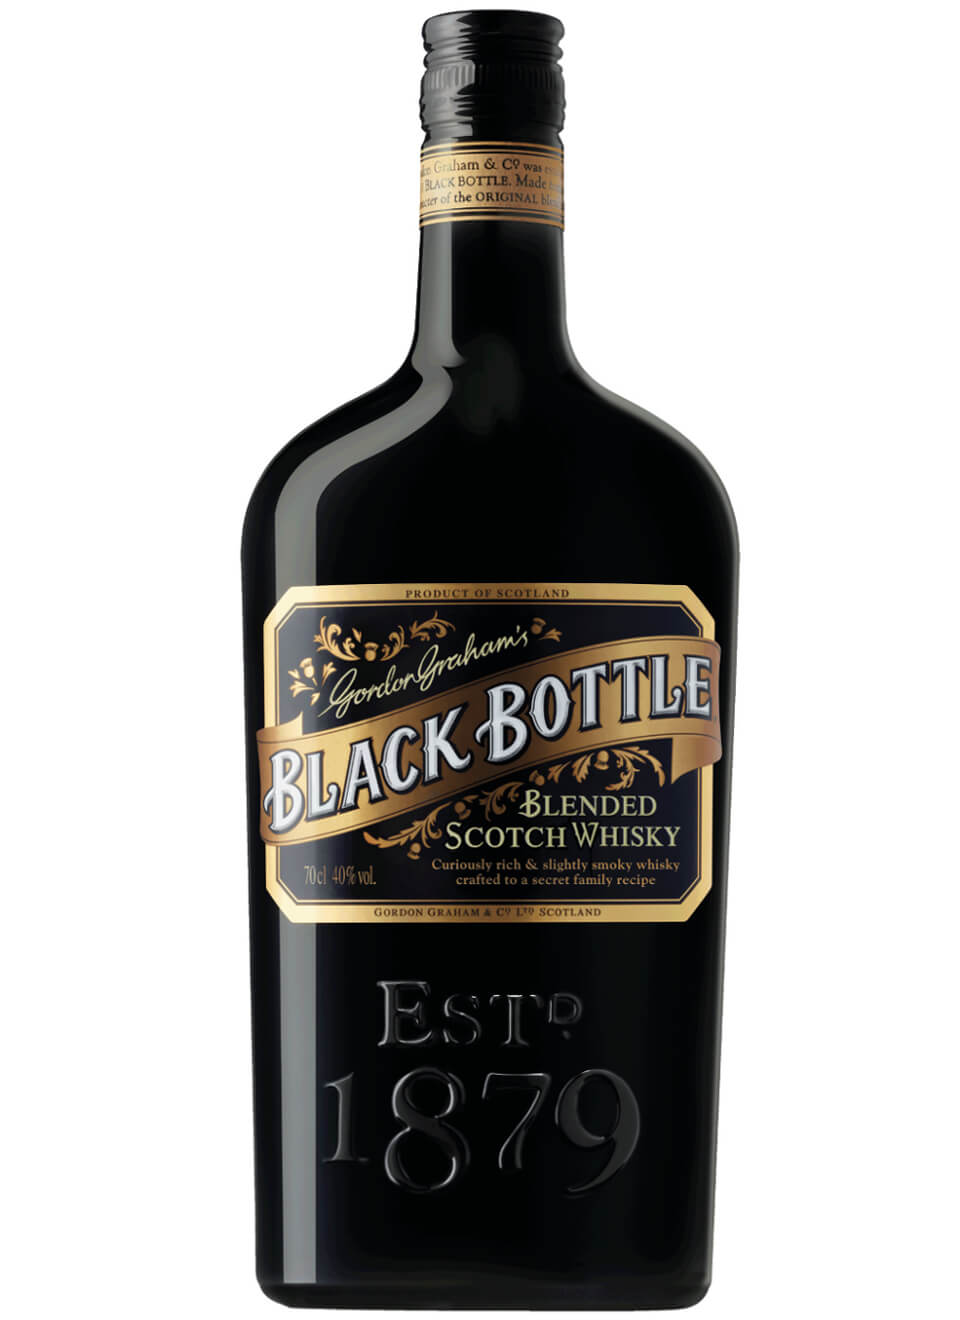 Gordon Grahams Black Bottle Blended Scotch Whisky 0,7 L